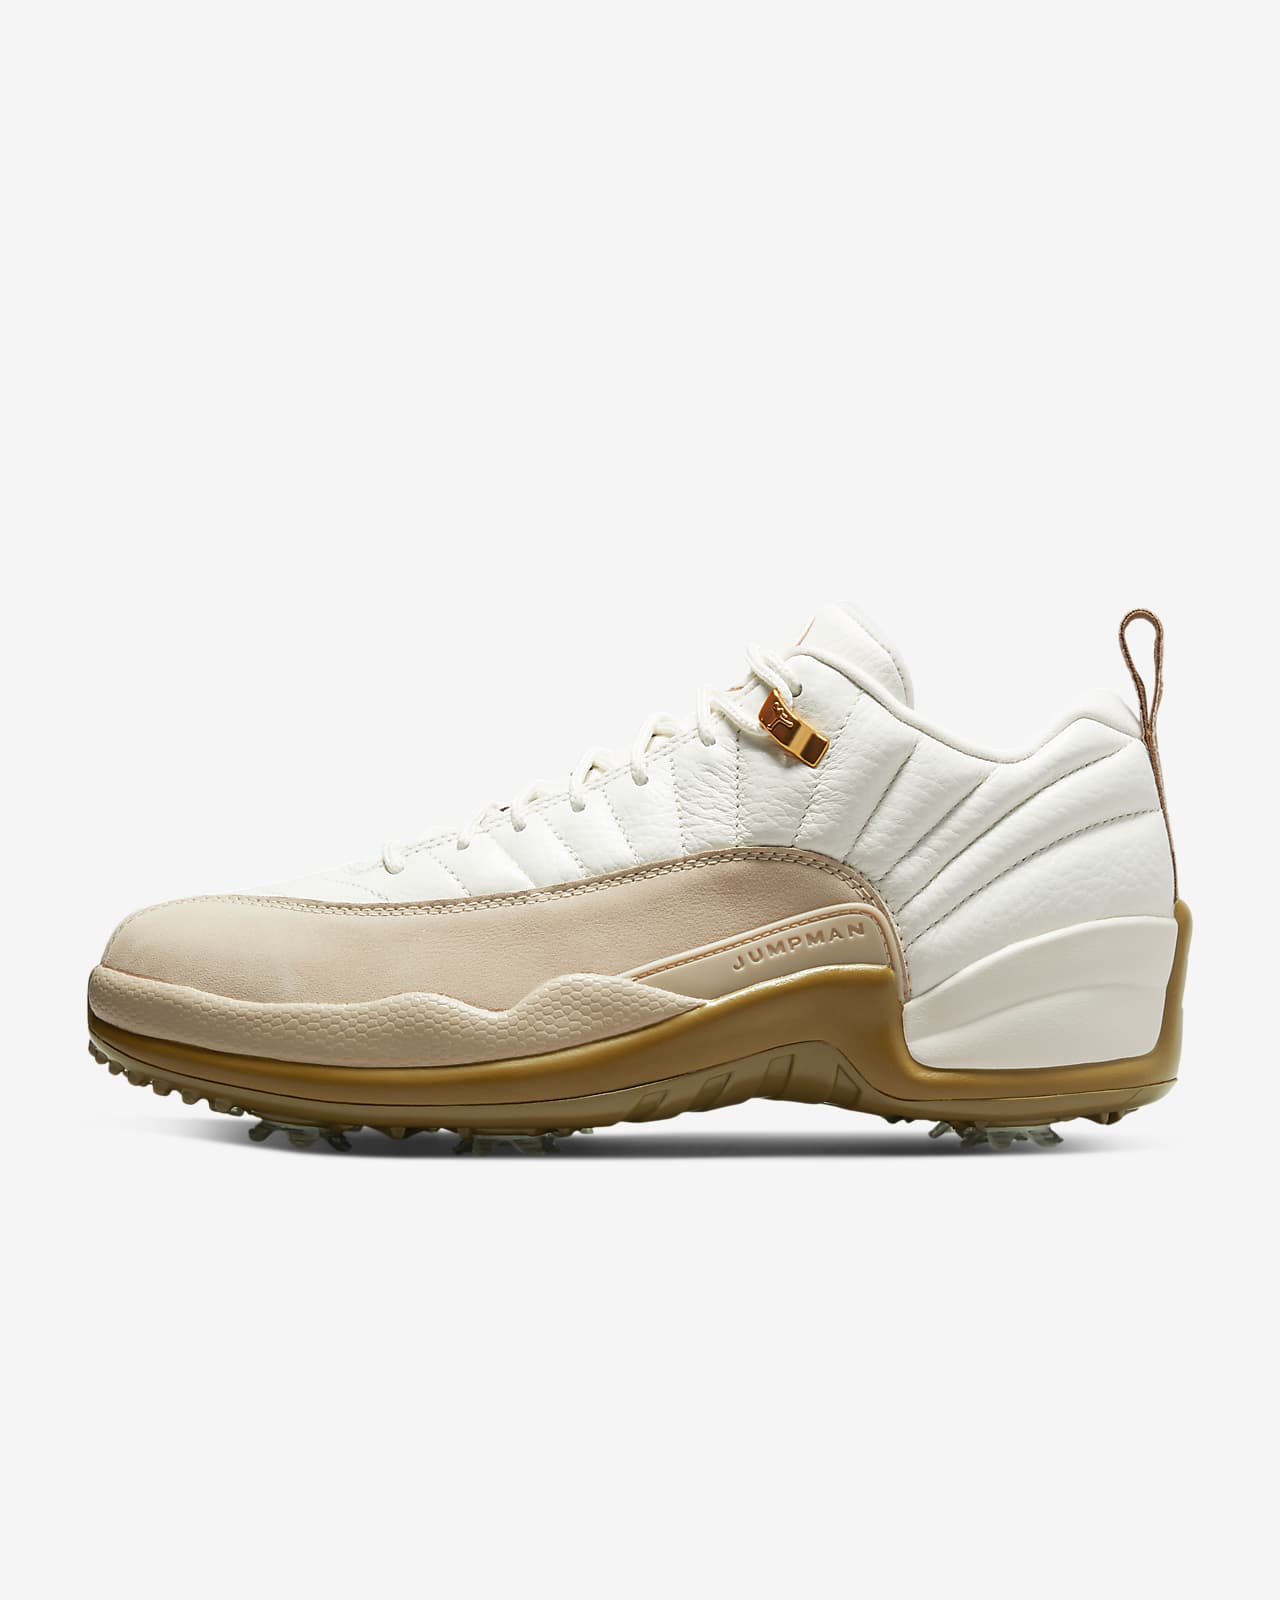 Chaussure de golf Jordan XII G